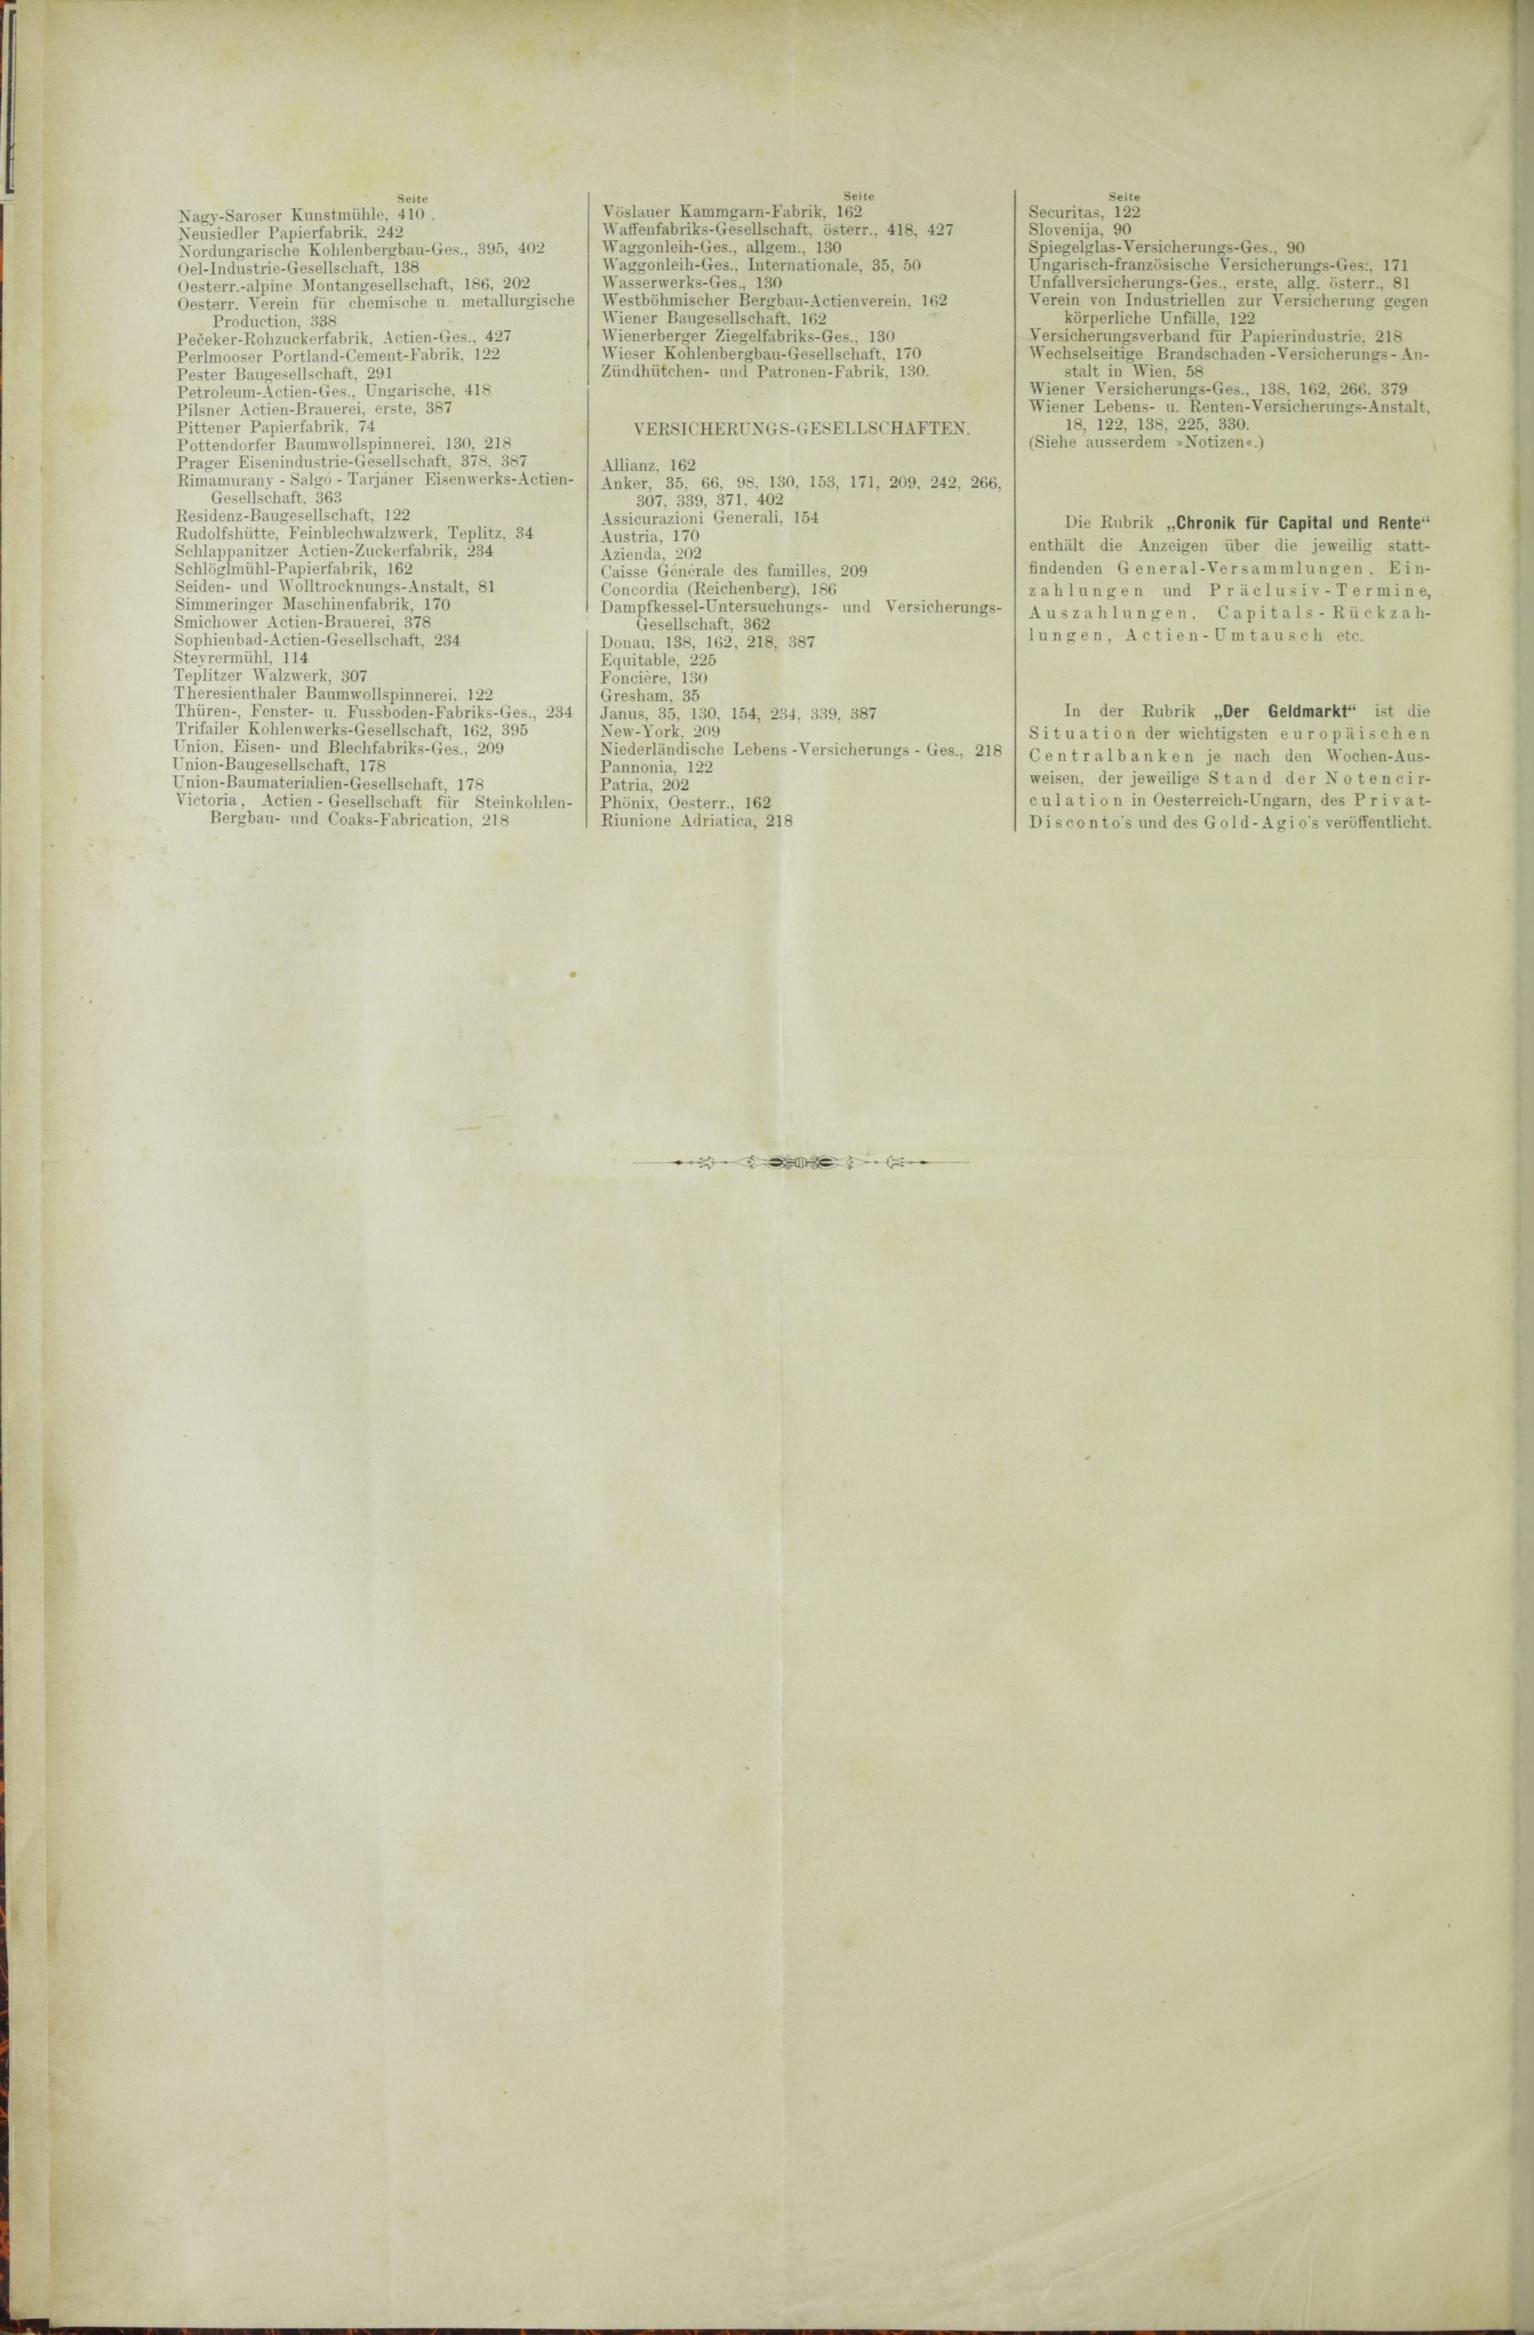 Der Tresor 01.10.1885 - Seite 10